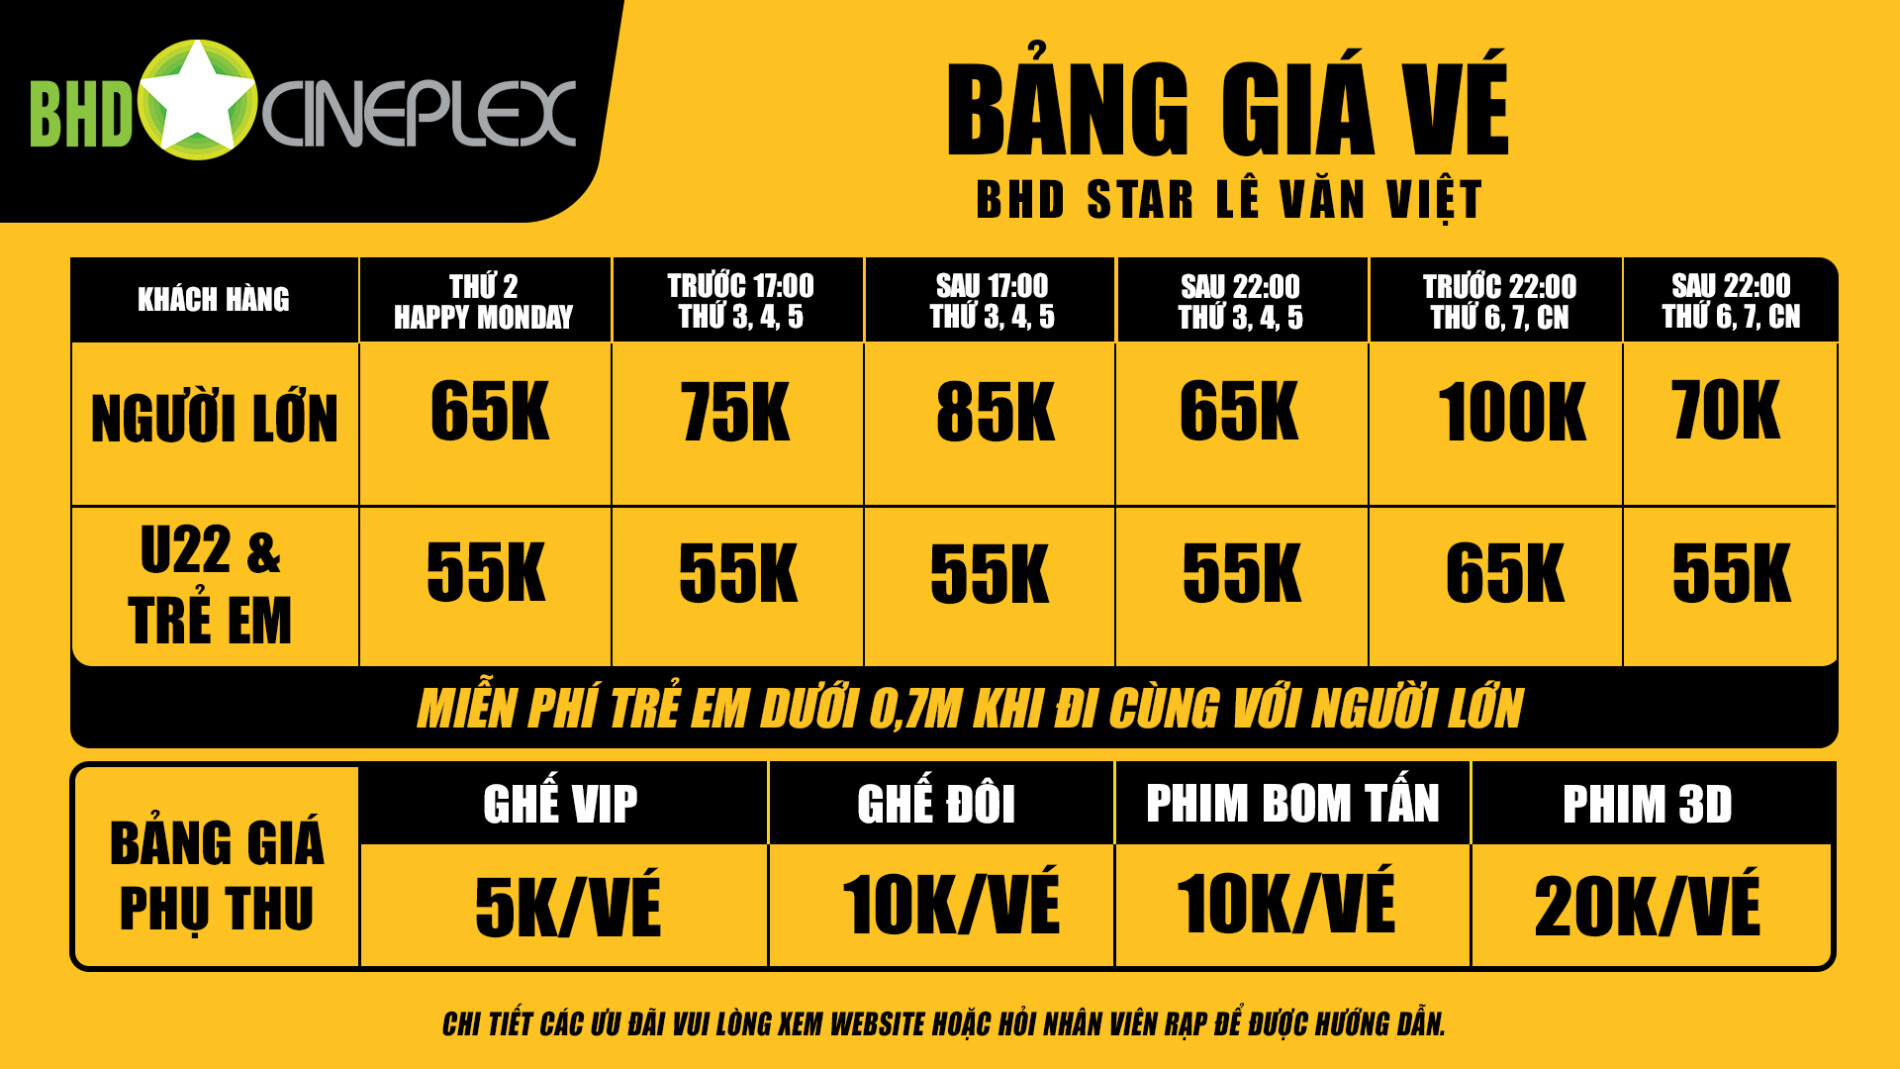 Lịch chiếu và thông tin Rạp BHD Star Lê Văn Việt